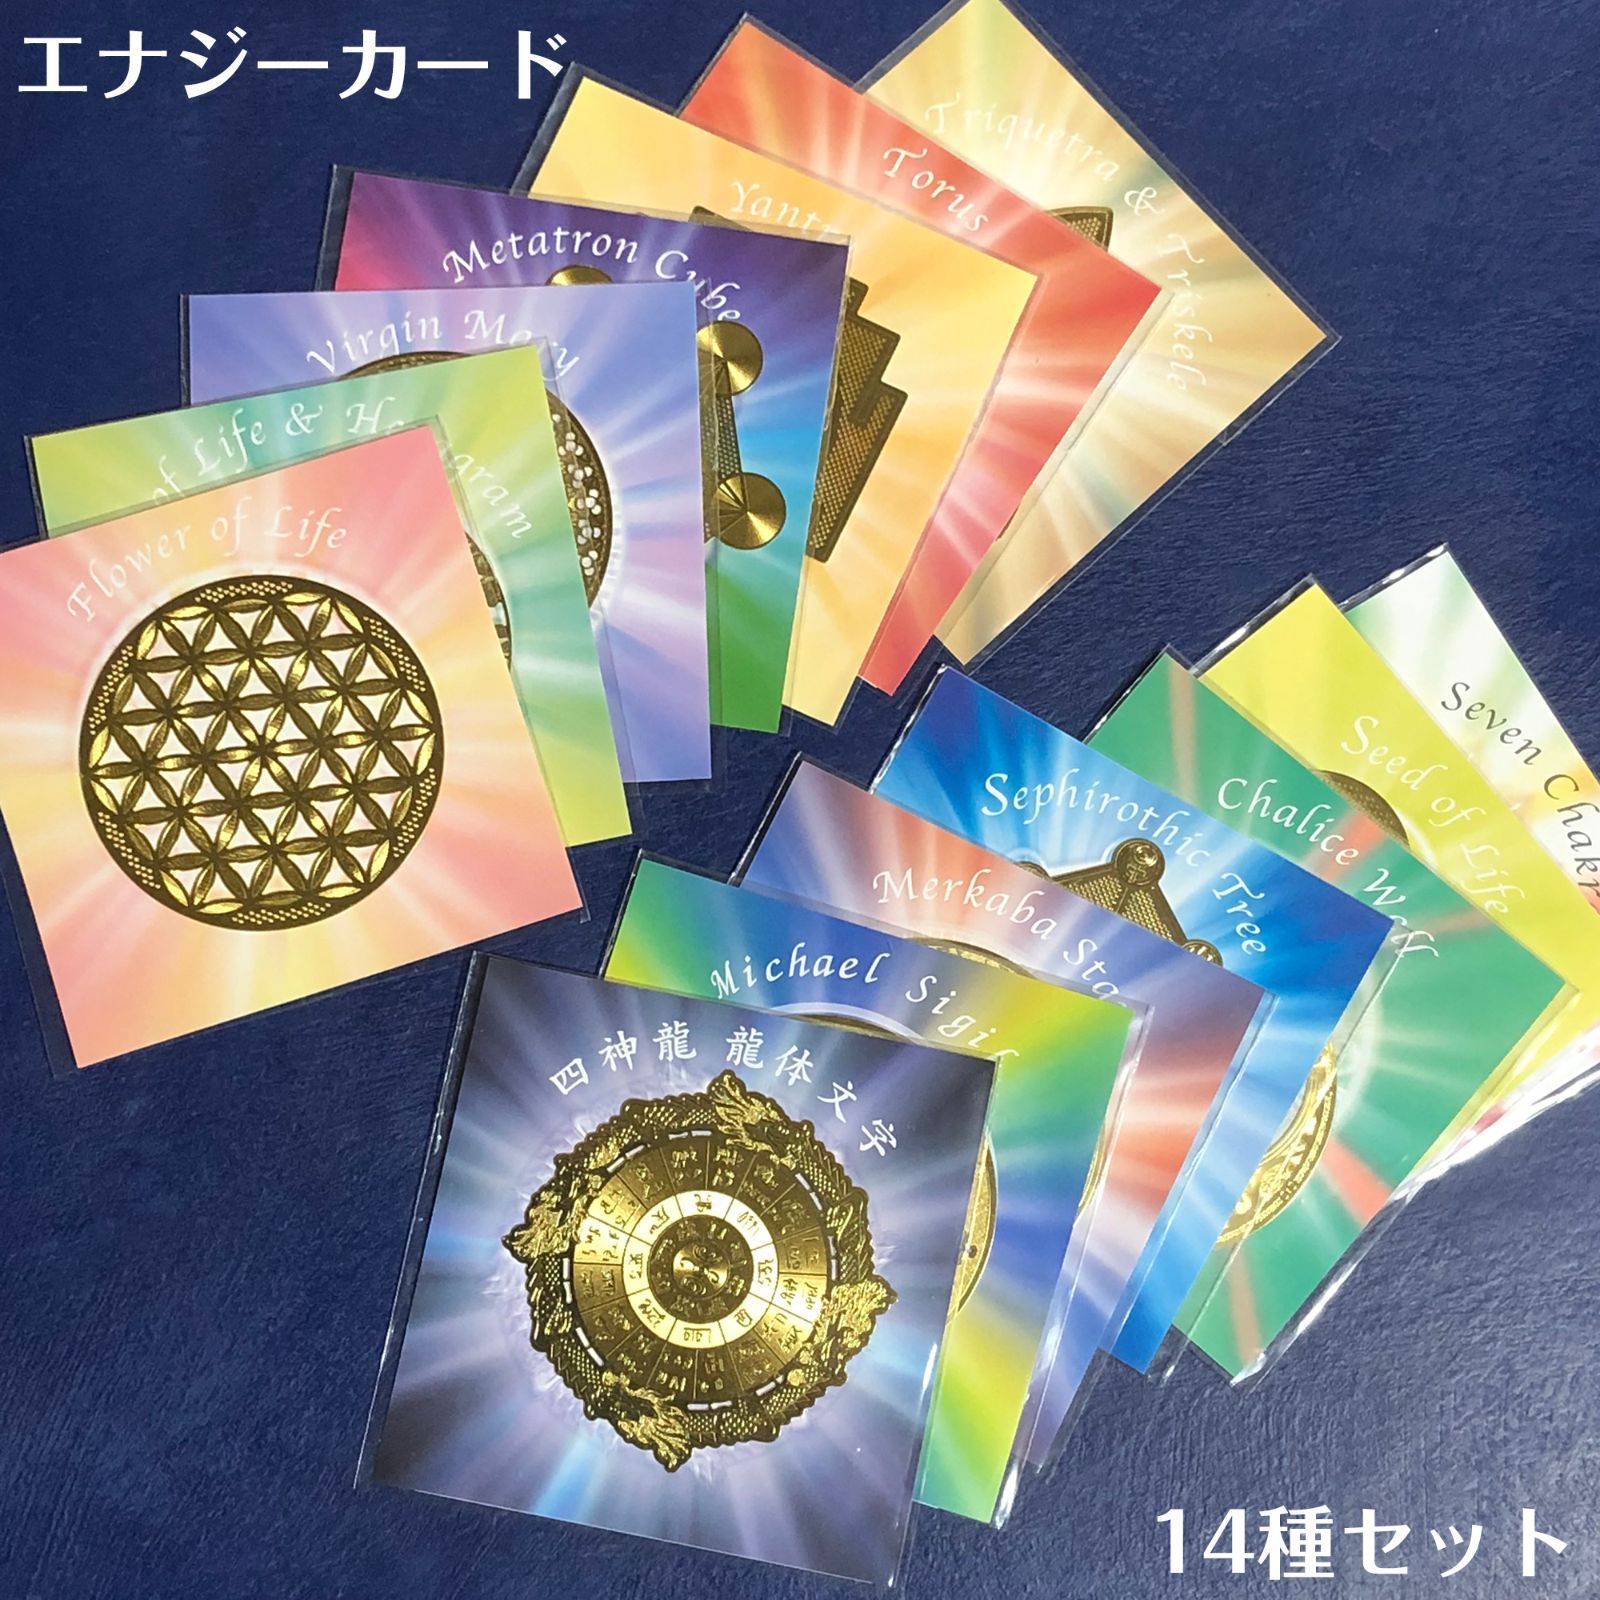 エナジーカード 14種セット Crystal Mind 神聖幾何学模様 - メルカリ